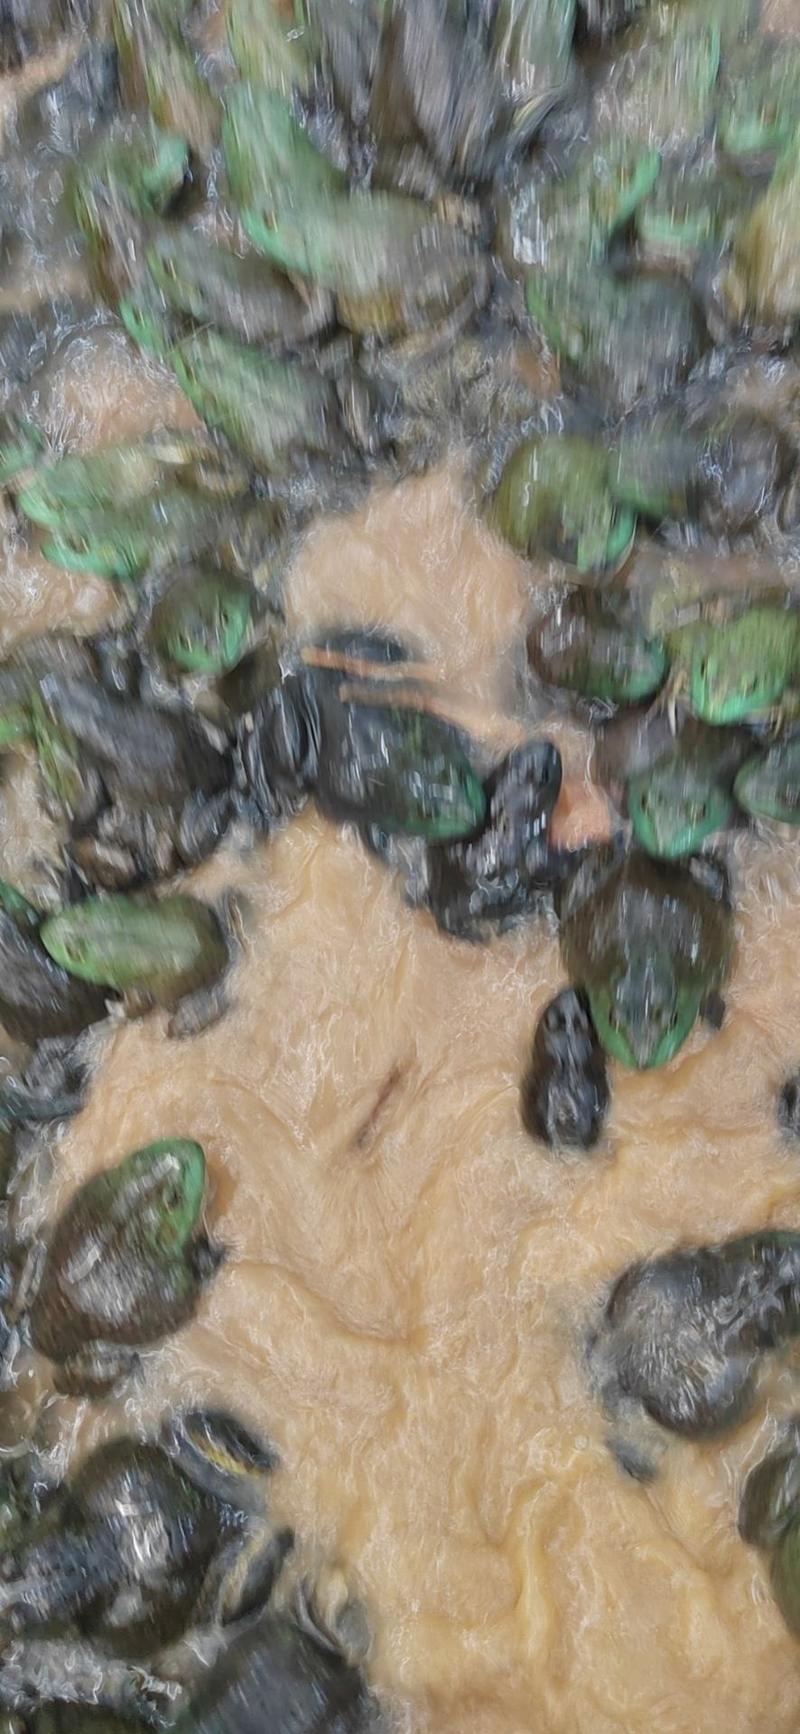 中国长寿之乡，广西省贺州市，用山泉水养出的牛蛙。口感很好